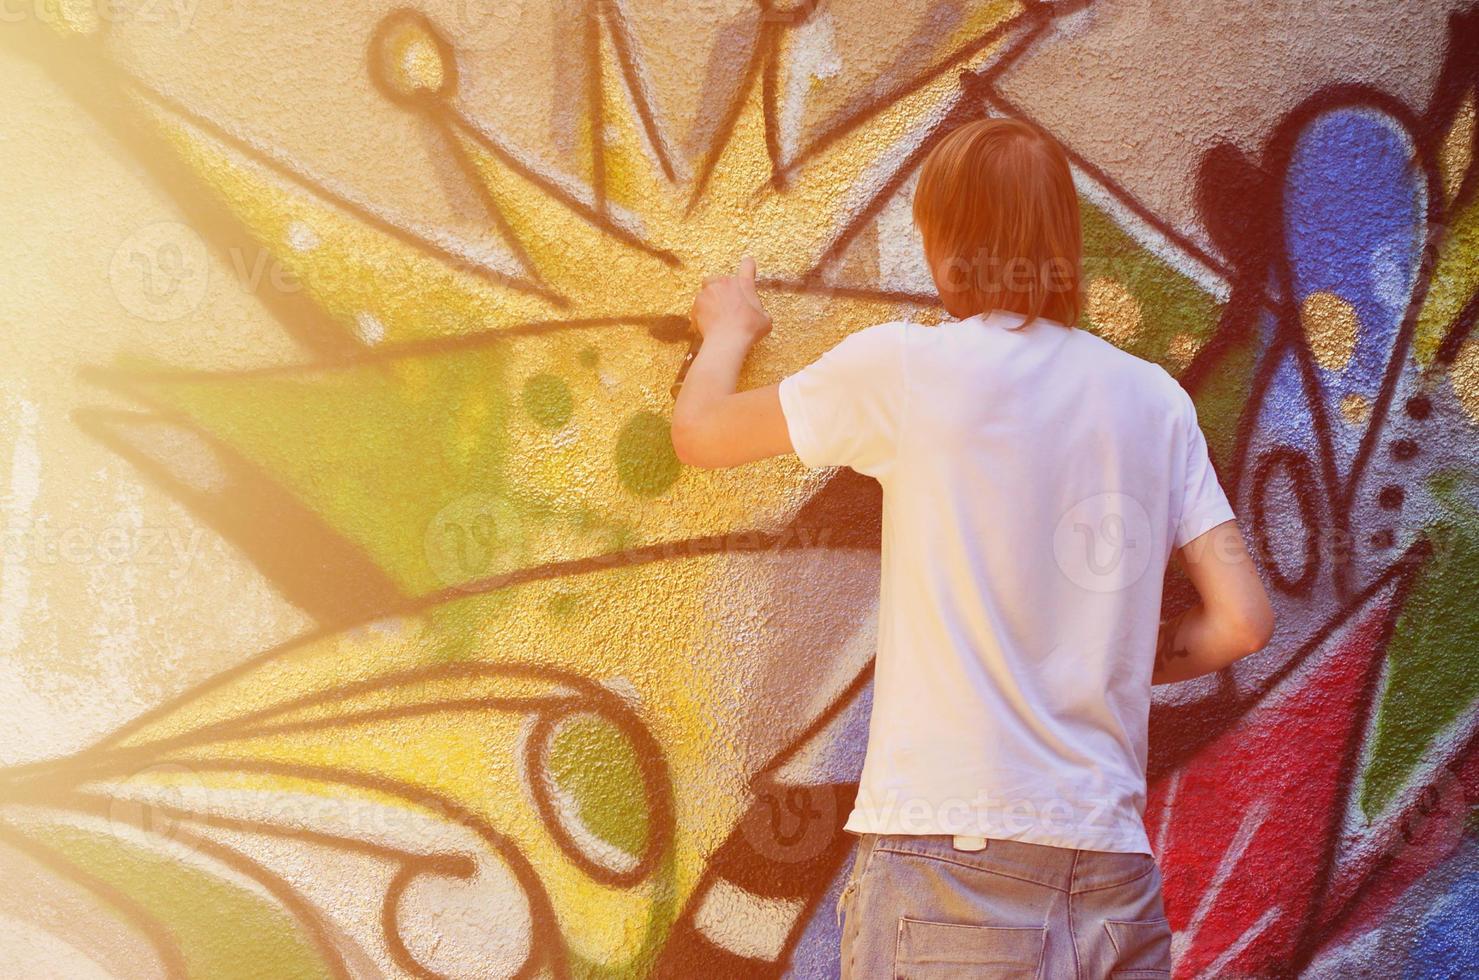 Foto av en ung kille i denim shorts och en vit skjorta. de kille drar på de graffiti vägg en teckning med aerosol målarfärger av olika färger. de begrepp av huliganism och skada till fast egendom